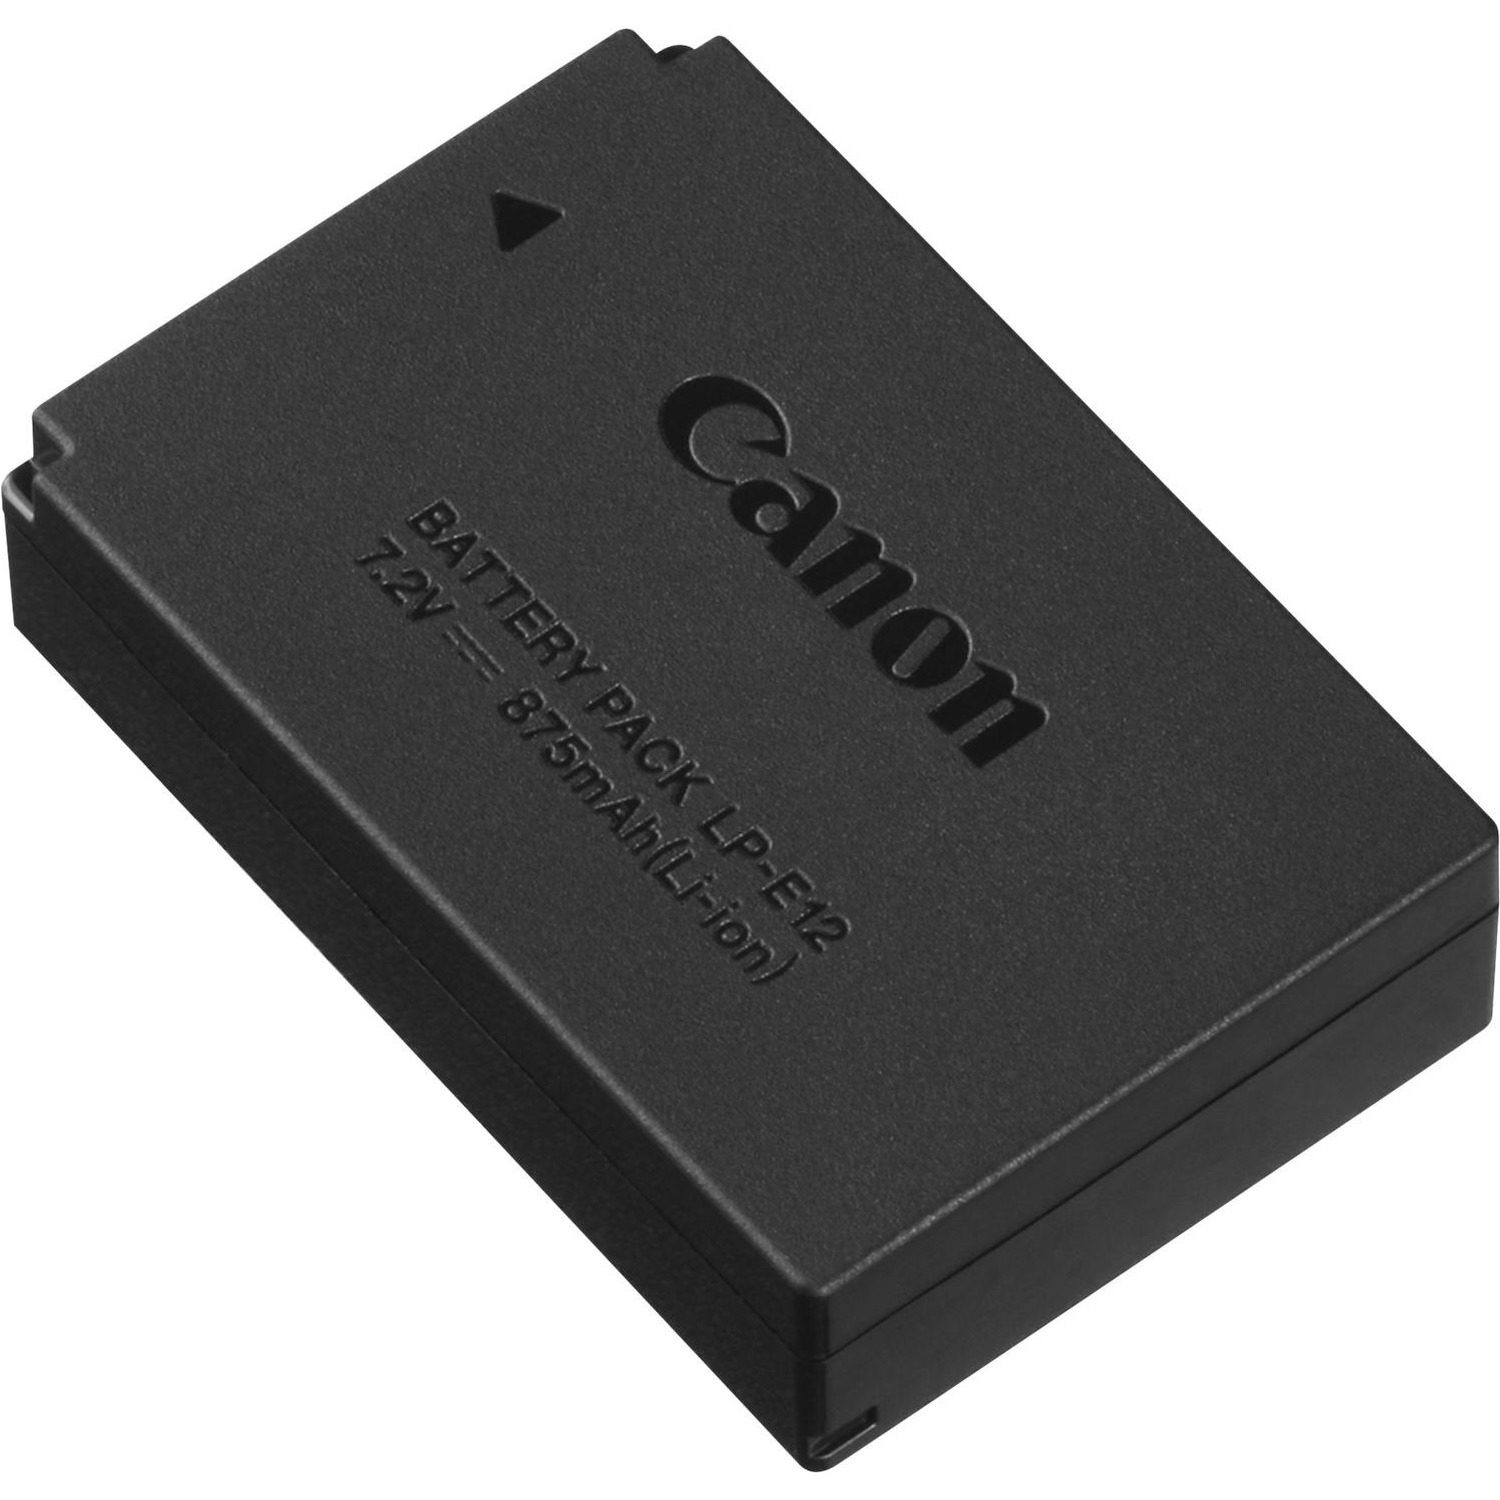 Immagine per Batteria Canon LP-E12 per EOS M e EOS 100D da DIMOStore